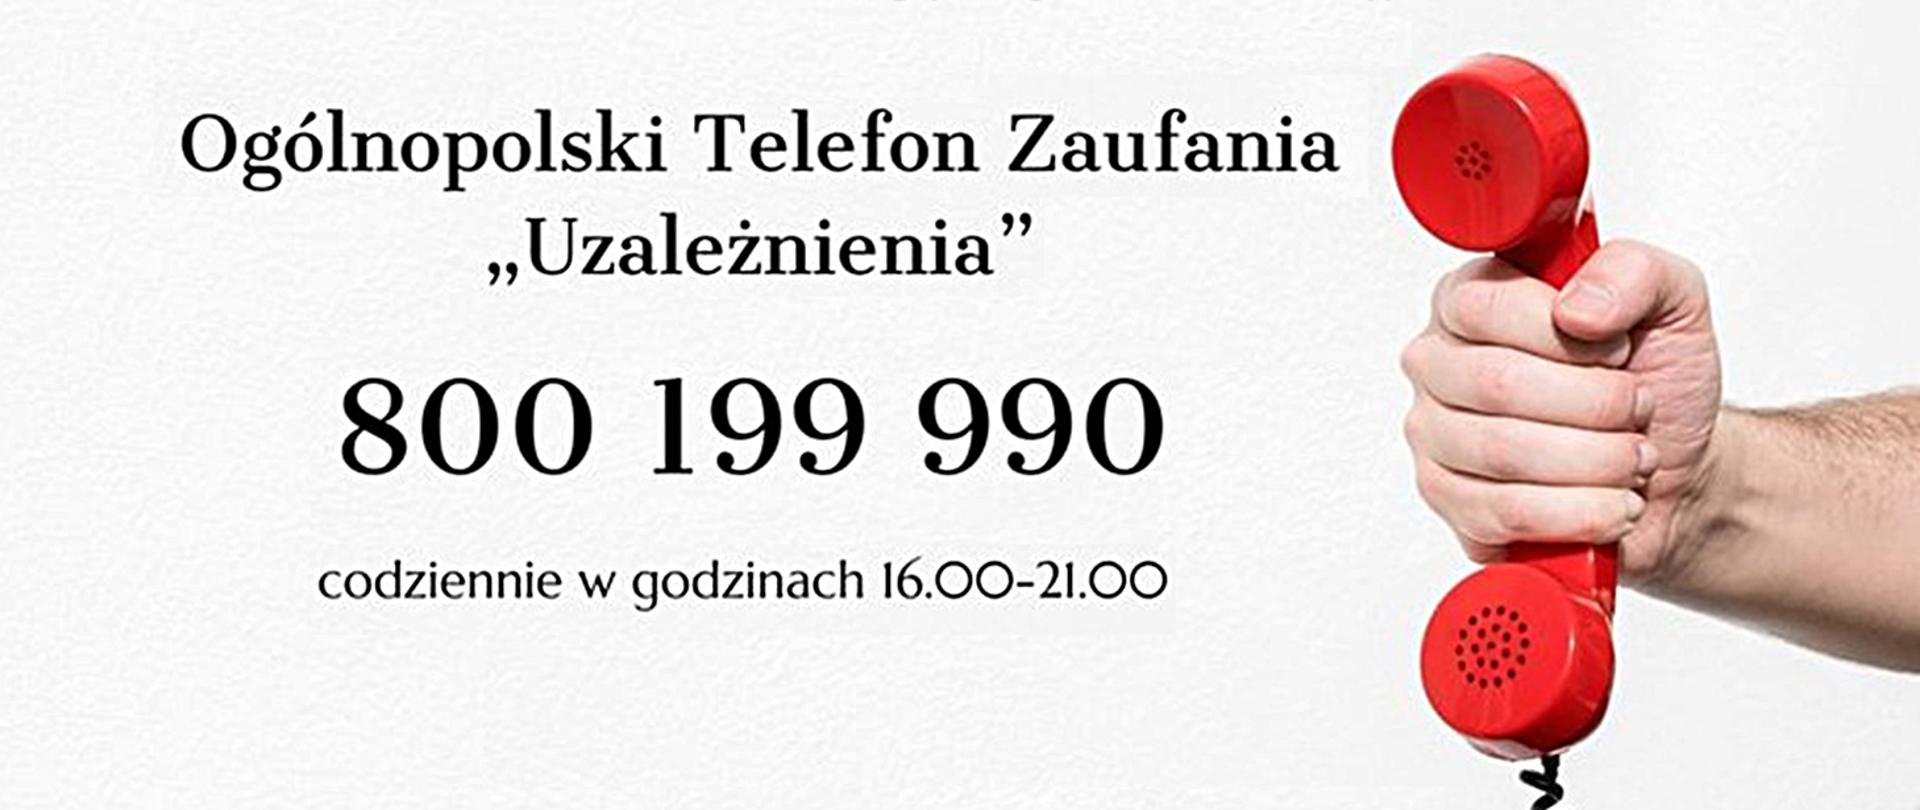 Na szarym tle ręka trzymająca czerwoną słuchawkę telefoniczną. Obok z lewej strony napis Ogólnopolskie telefon zaufania 800 199 990.